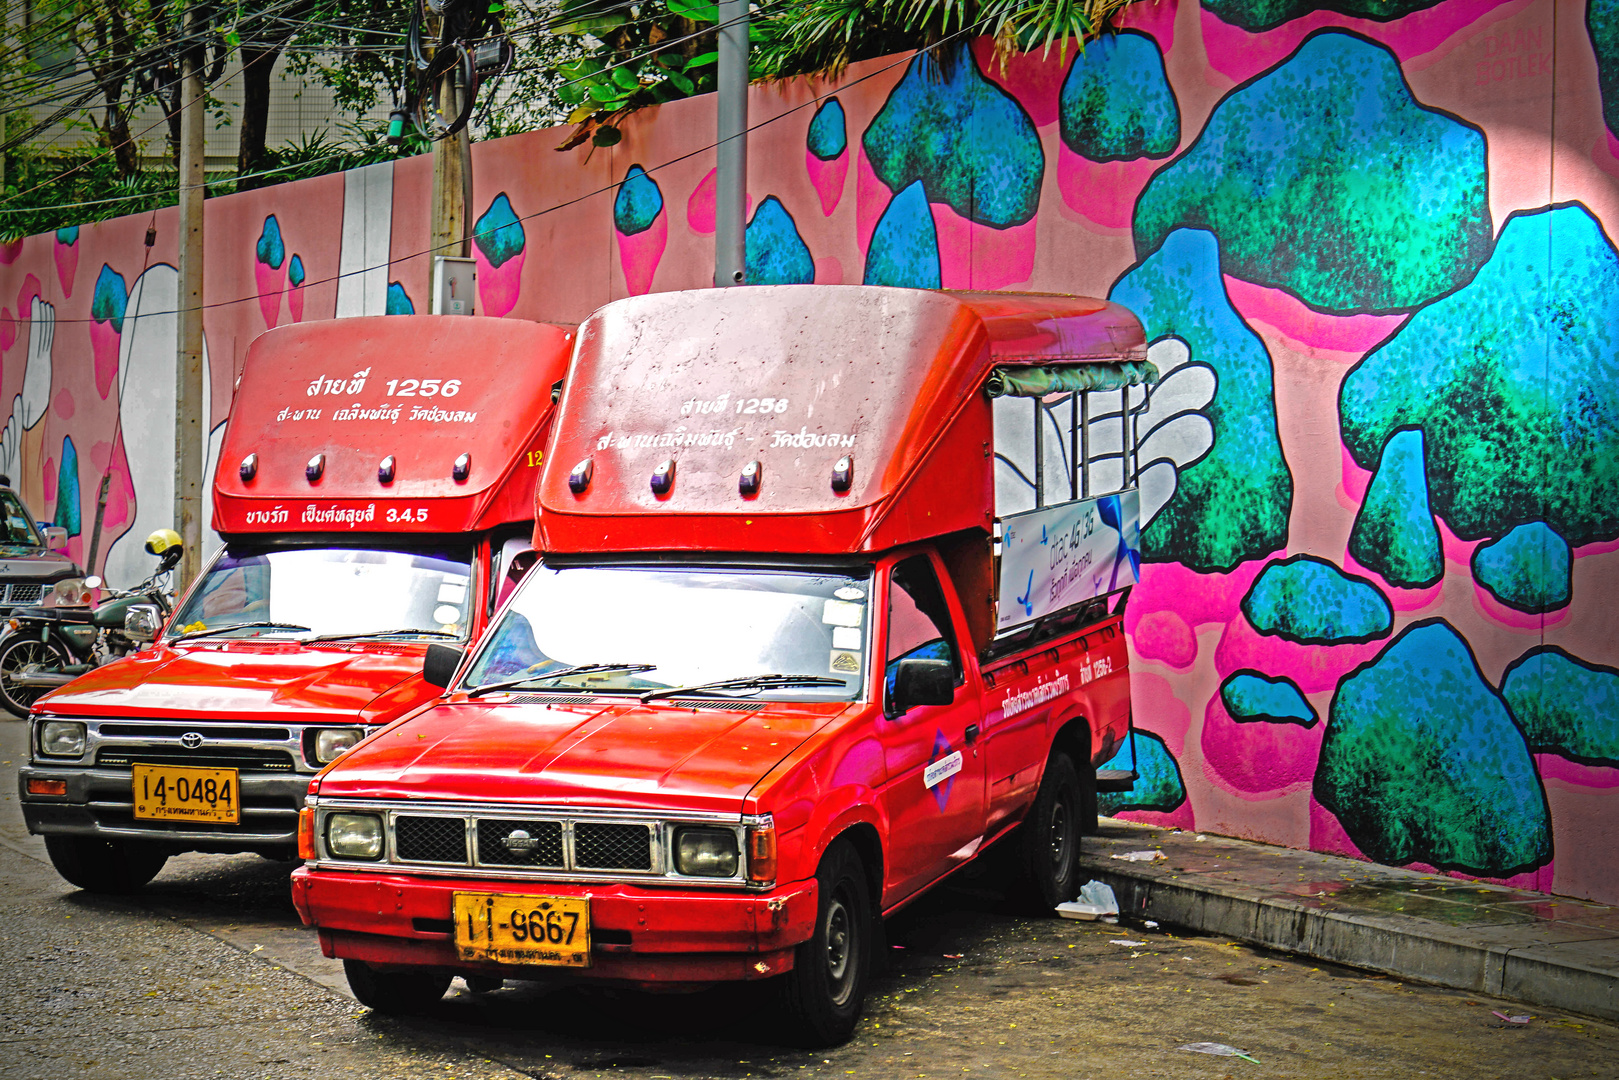 Red Cars in Bangkok